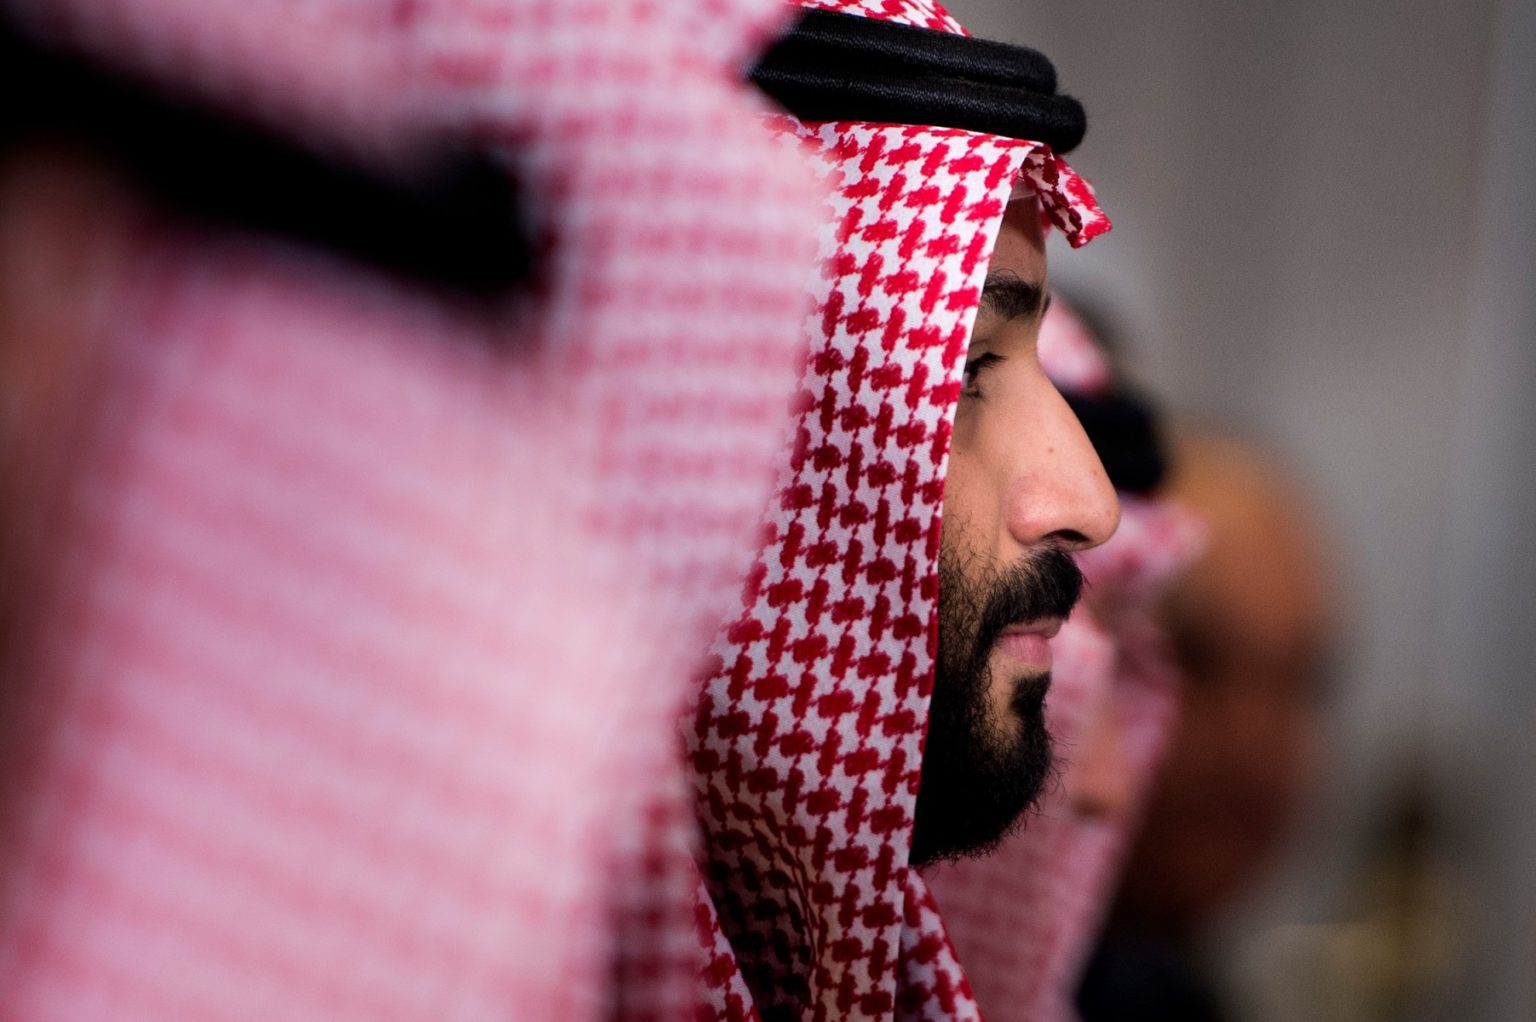 السعودية : تنفيذ 81 إعداماً في غفلة عن العالم هل تجدي محاولات تلميع صورة ولي العهد بعد هذه المجزرة؟